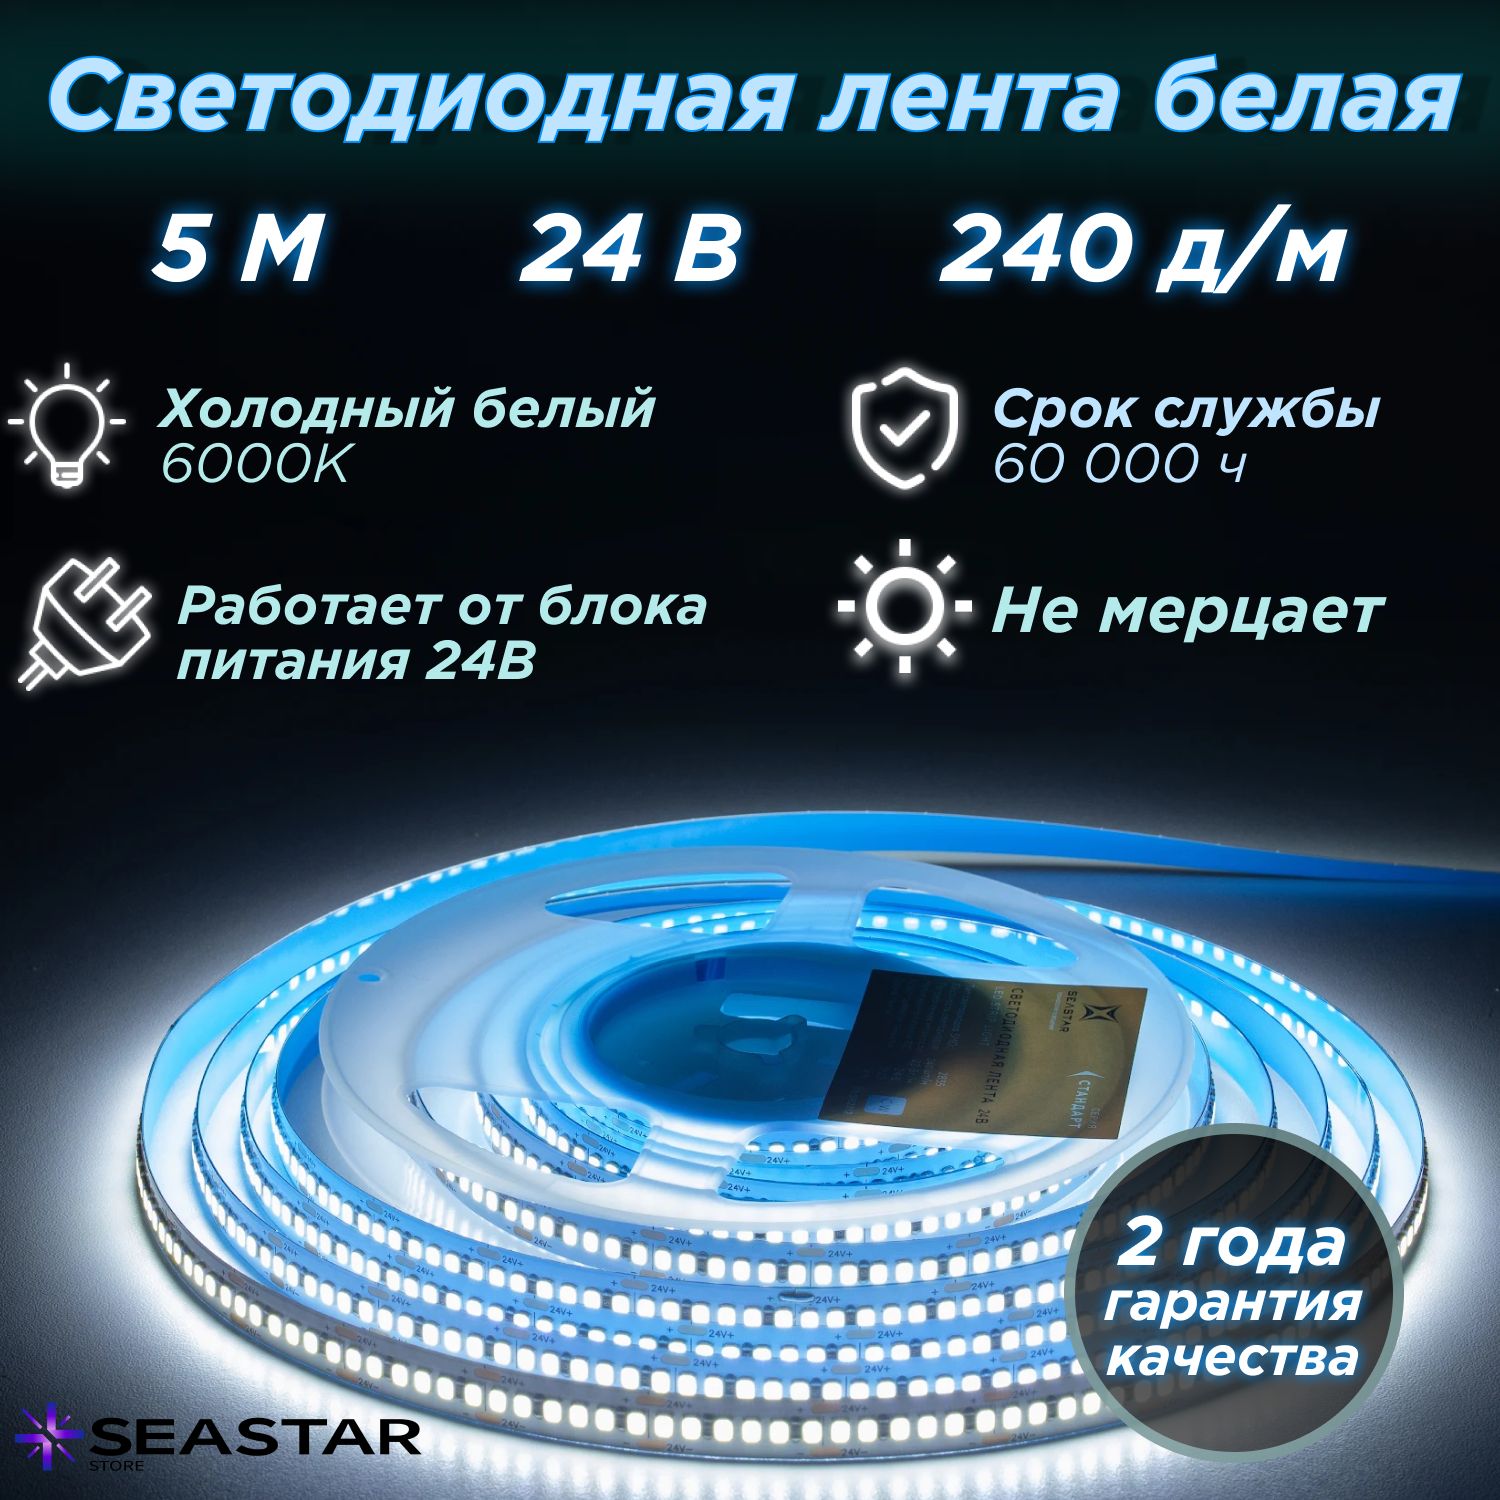 SeaStarСветодиоднаялента,24В,IP20,240LED/m5м,24В,IP20,240LED/m283522вт/мХолодныйбелый,суперяркая